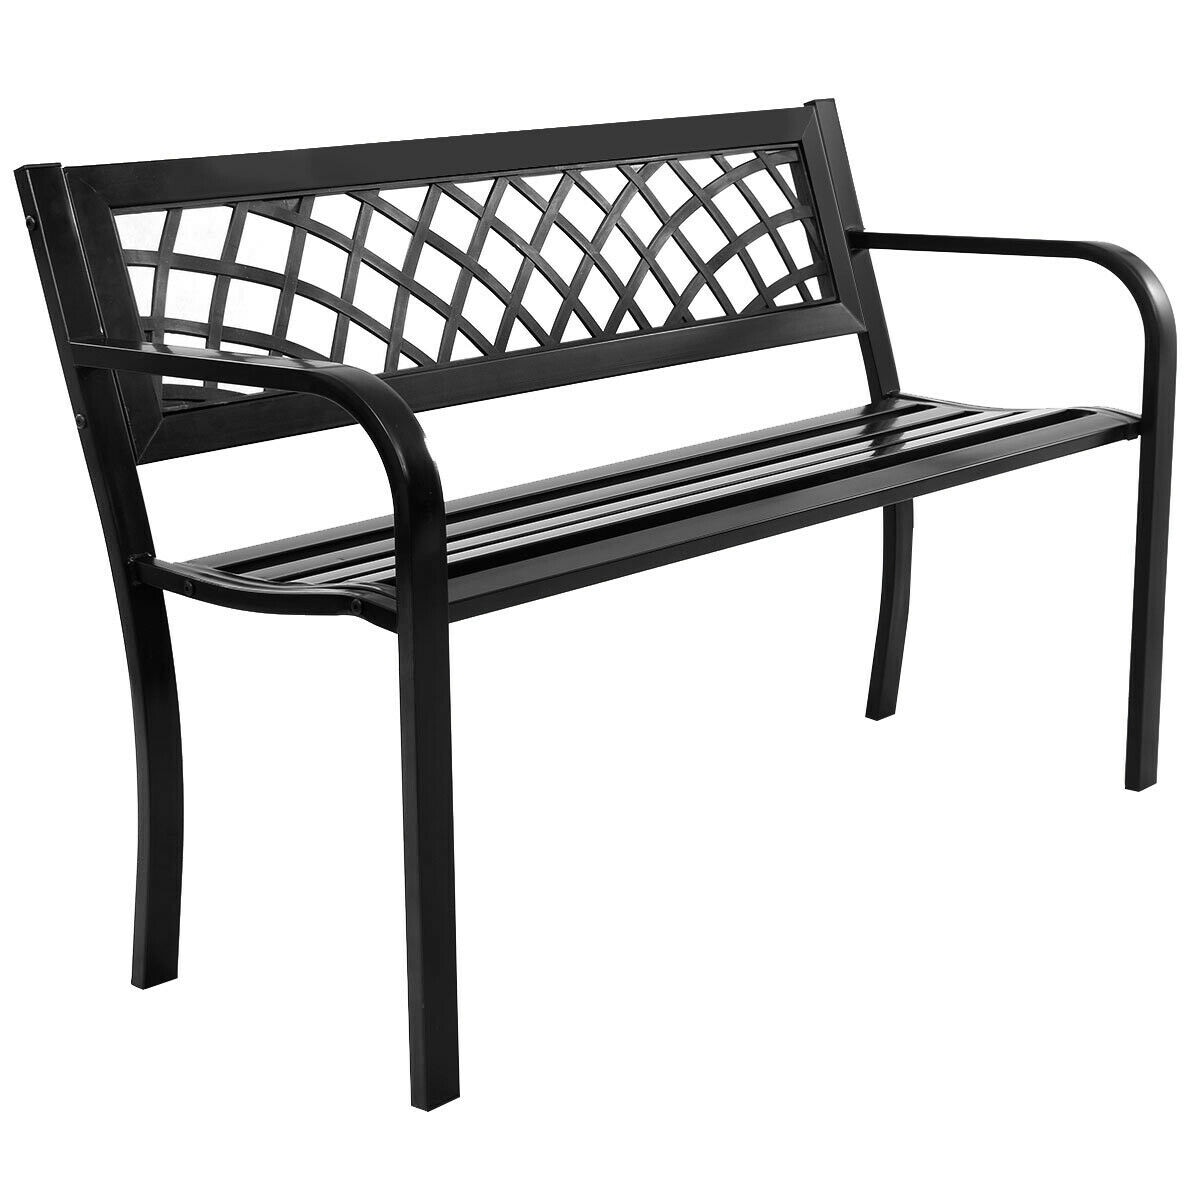 Patio Park Garden Bench Porch Path Chair Outdoor Lawn Garden Black 2 Seat 